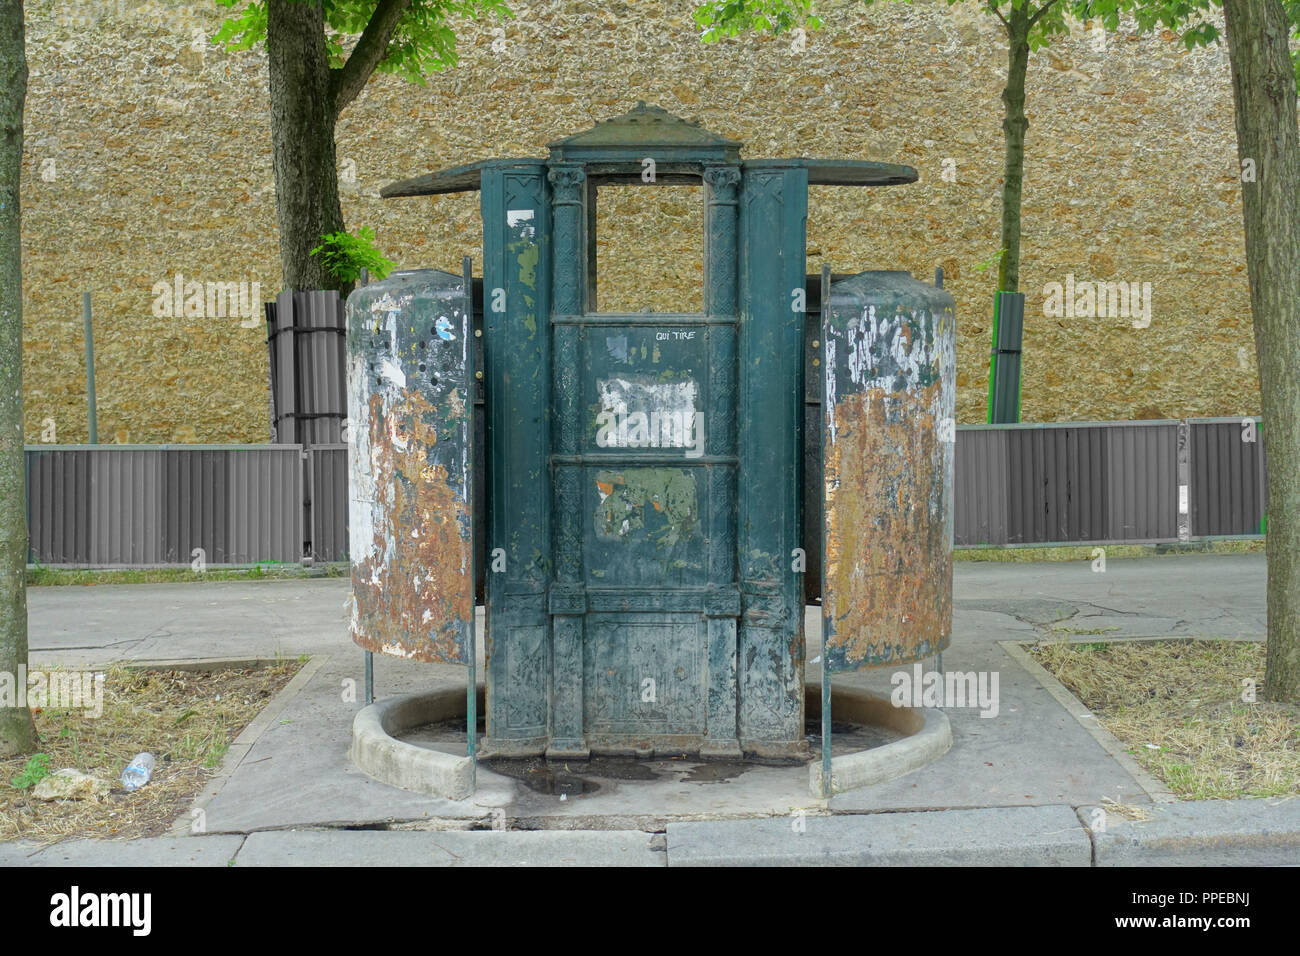 Paris letzte 'Vespasienne' (Pissoir) - Paris, letzte "Vespasienne' (öffentliche Toilette), Boulevard Arago Stockfoto